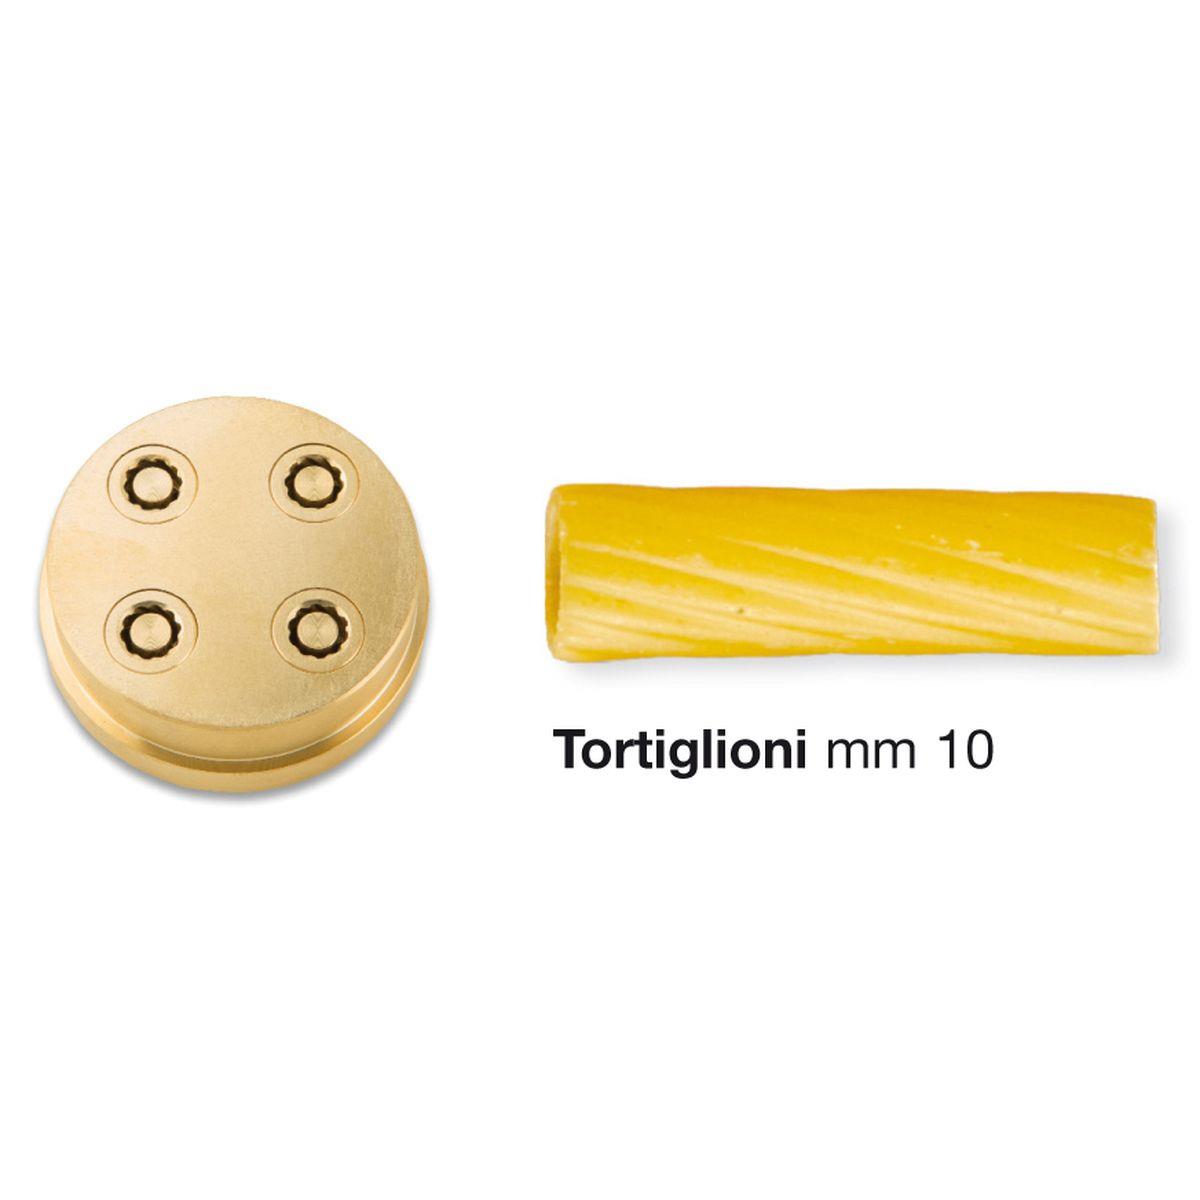 Imperia - Bronze-Matrize 285 für Tortiglioni für die Nudelmaschine Home Chef